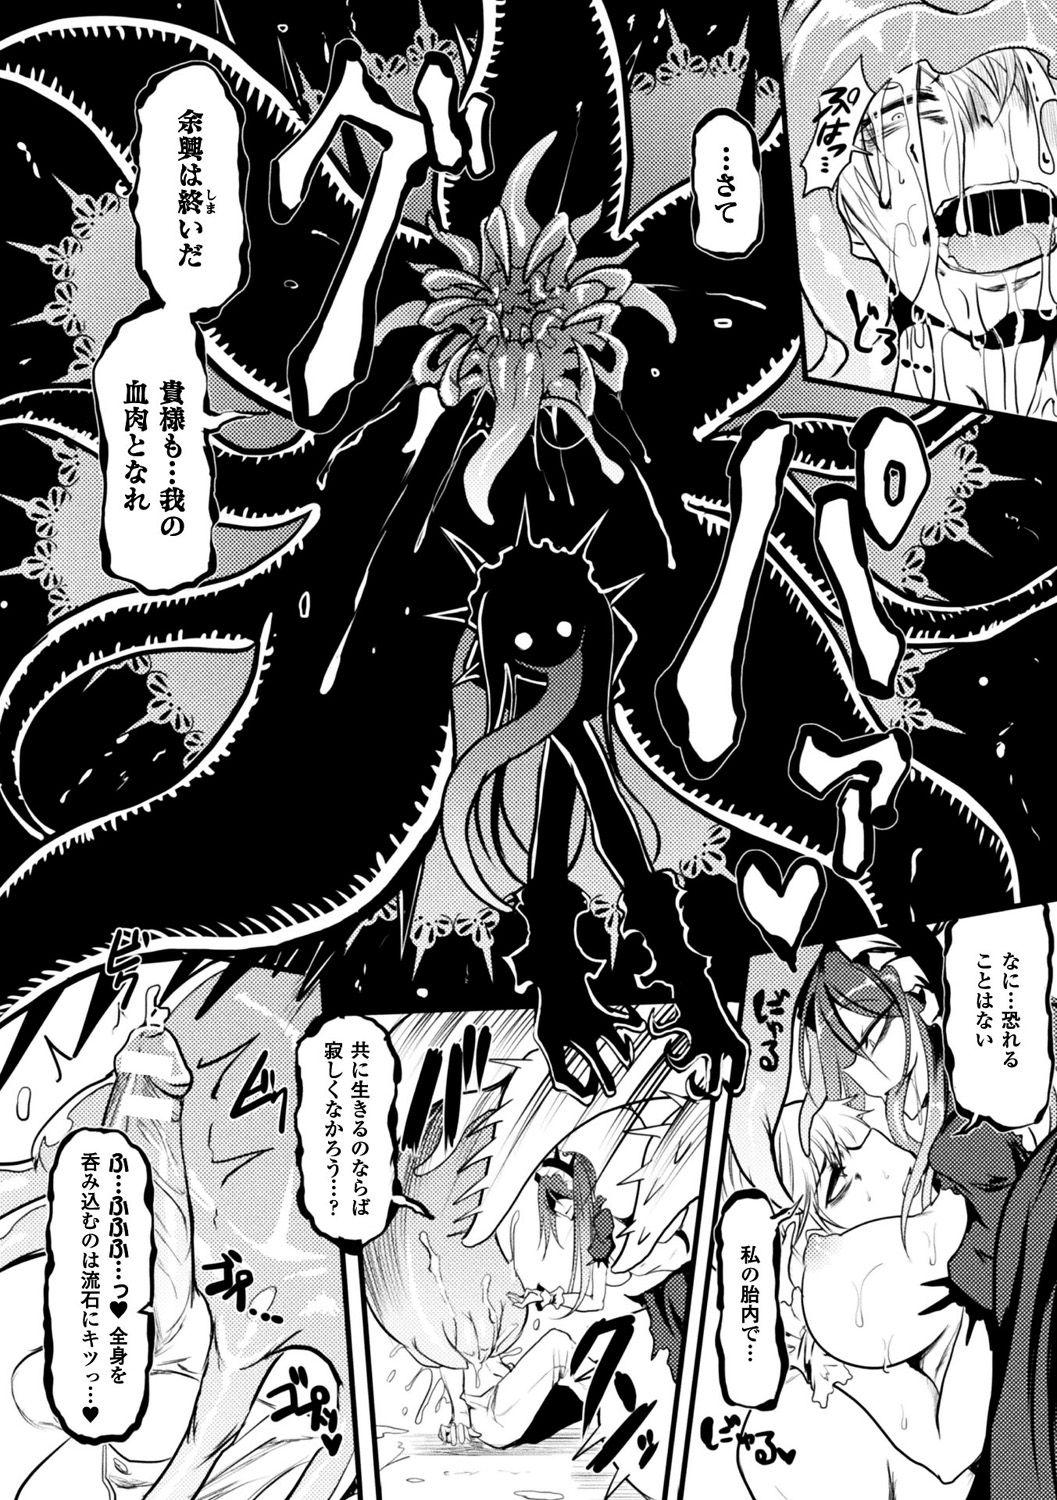 Bessatsu Comic Unreal Monster Musume Paradise Digital Ban Vol. 9 39